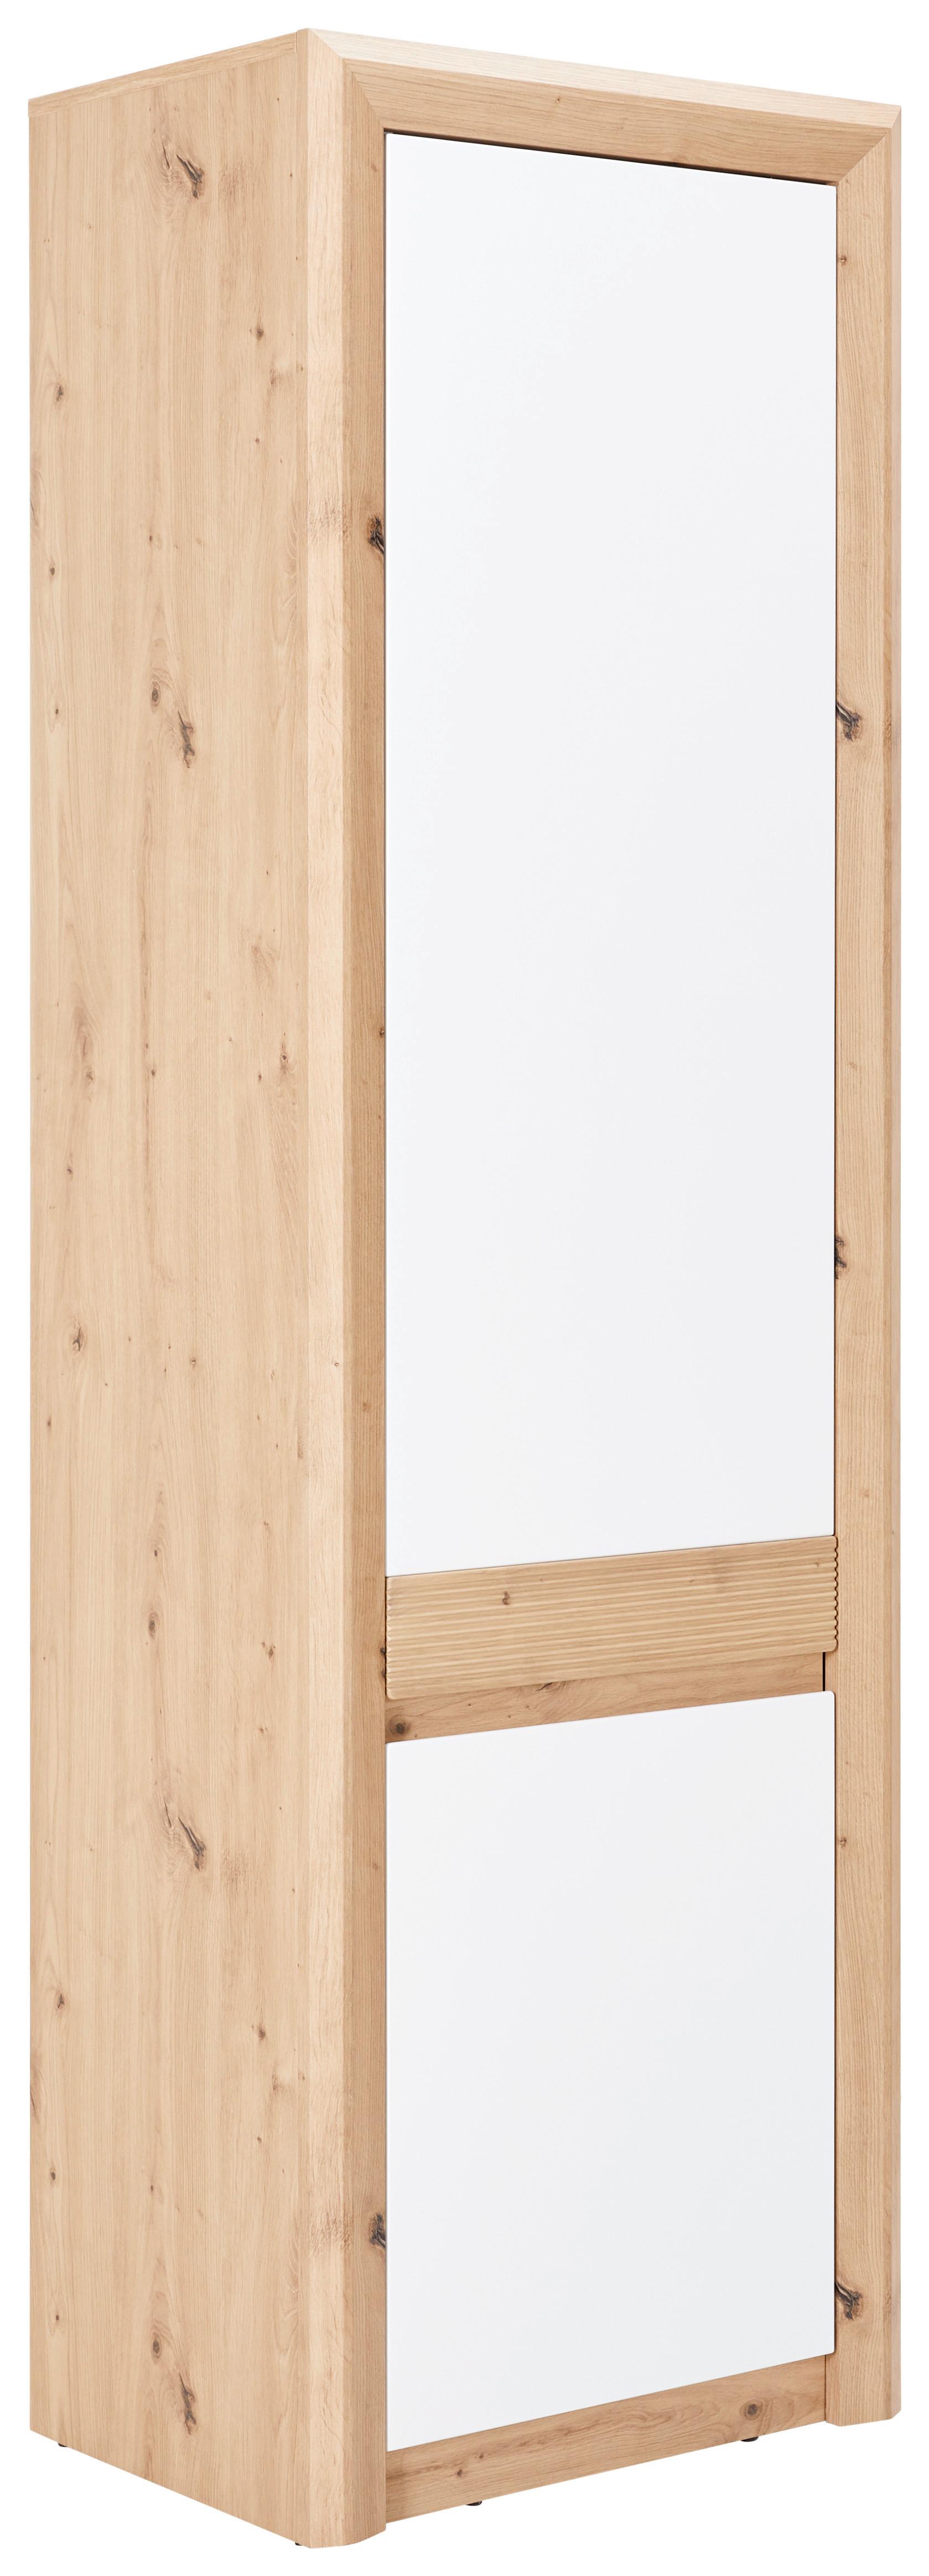 Garderobenschrank Kashmir New Eiche Dekor/Weiß B: 60 cm - Eichefarben/Weiß, MODERN (60/192/41cm) - James Wood